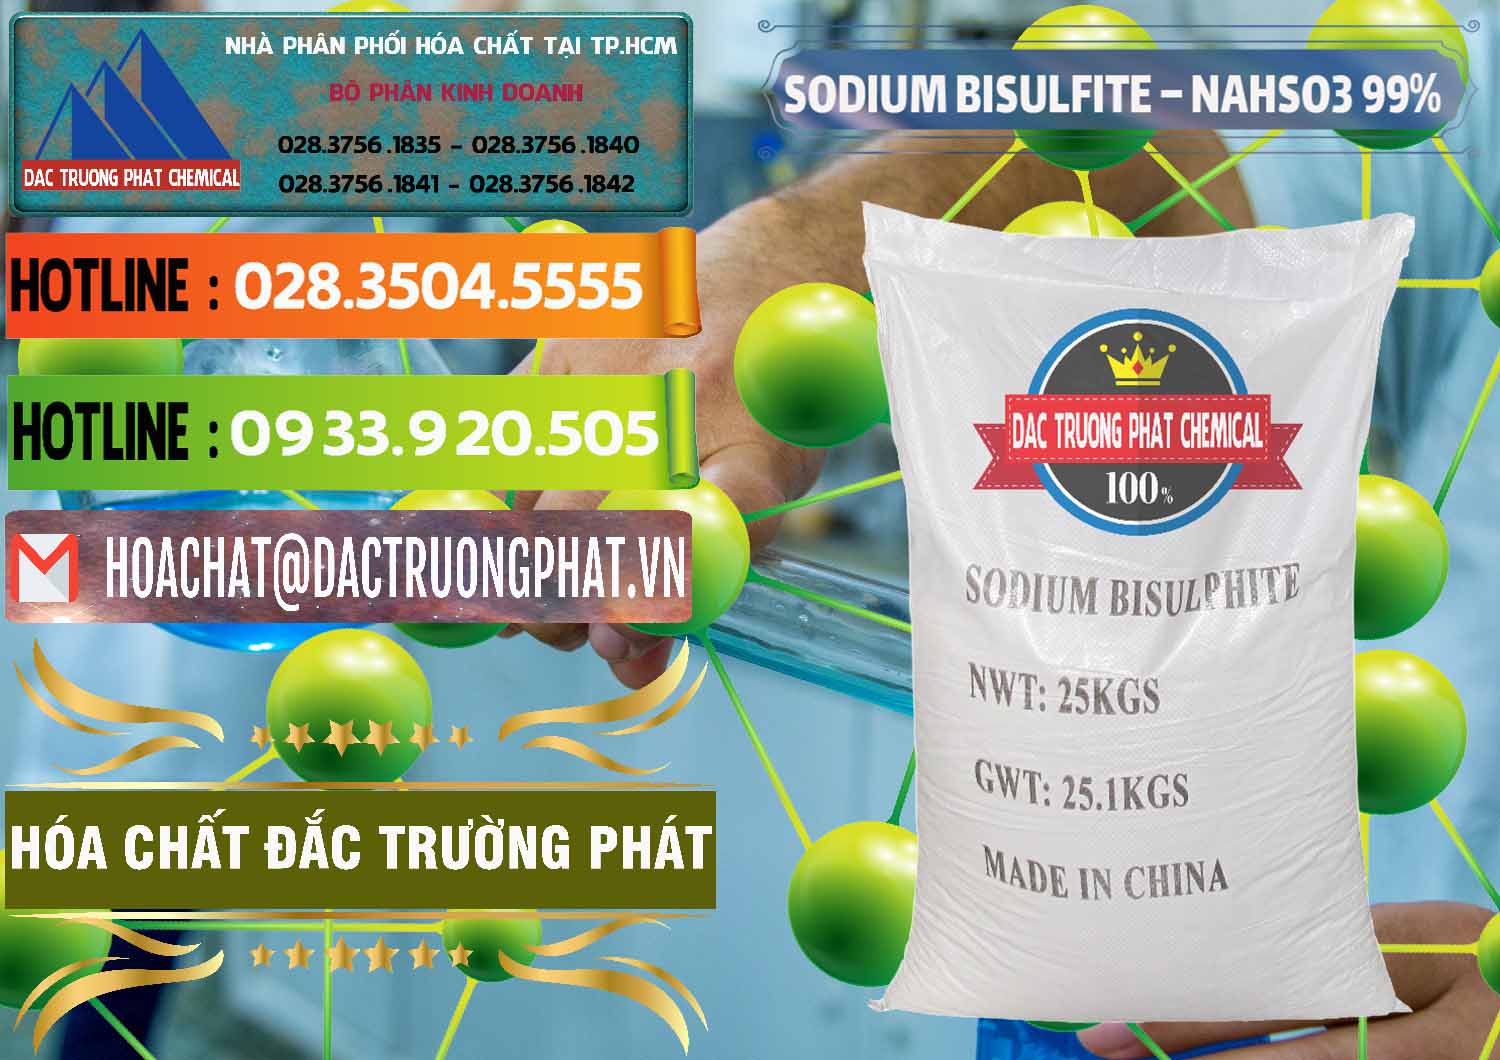 Cty chuyên bán _ cung cấp Sodium Bisulfite – NAHSO3 Trung Quốc China - 0140 - Cty phân phối và cung cấp hóa chất tại TP.HCM - cungcaphoachat.com.vn